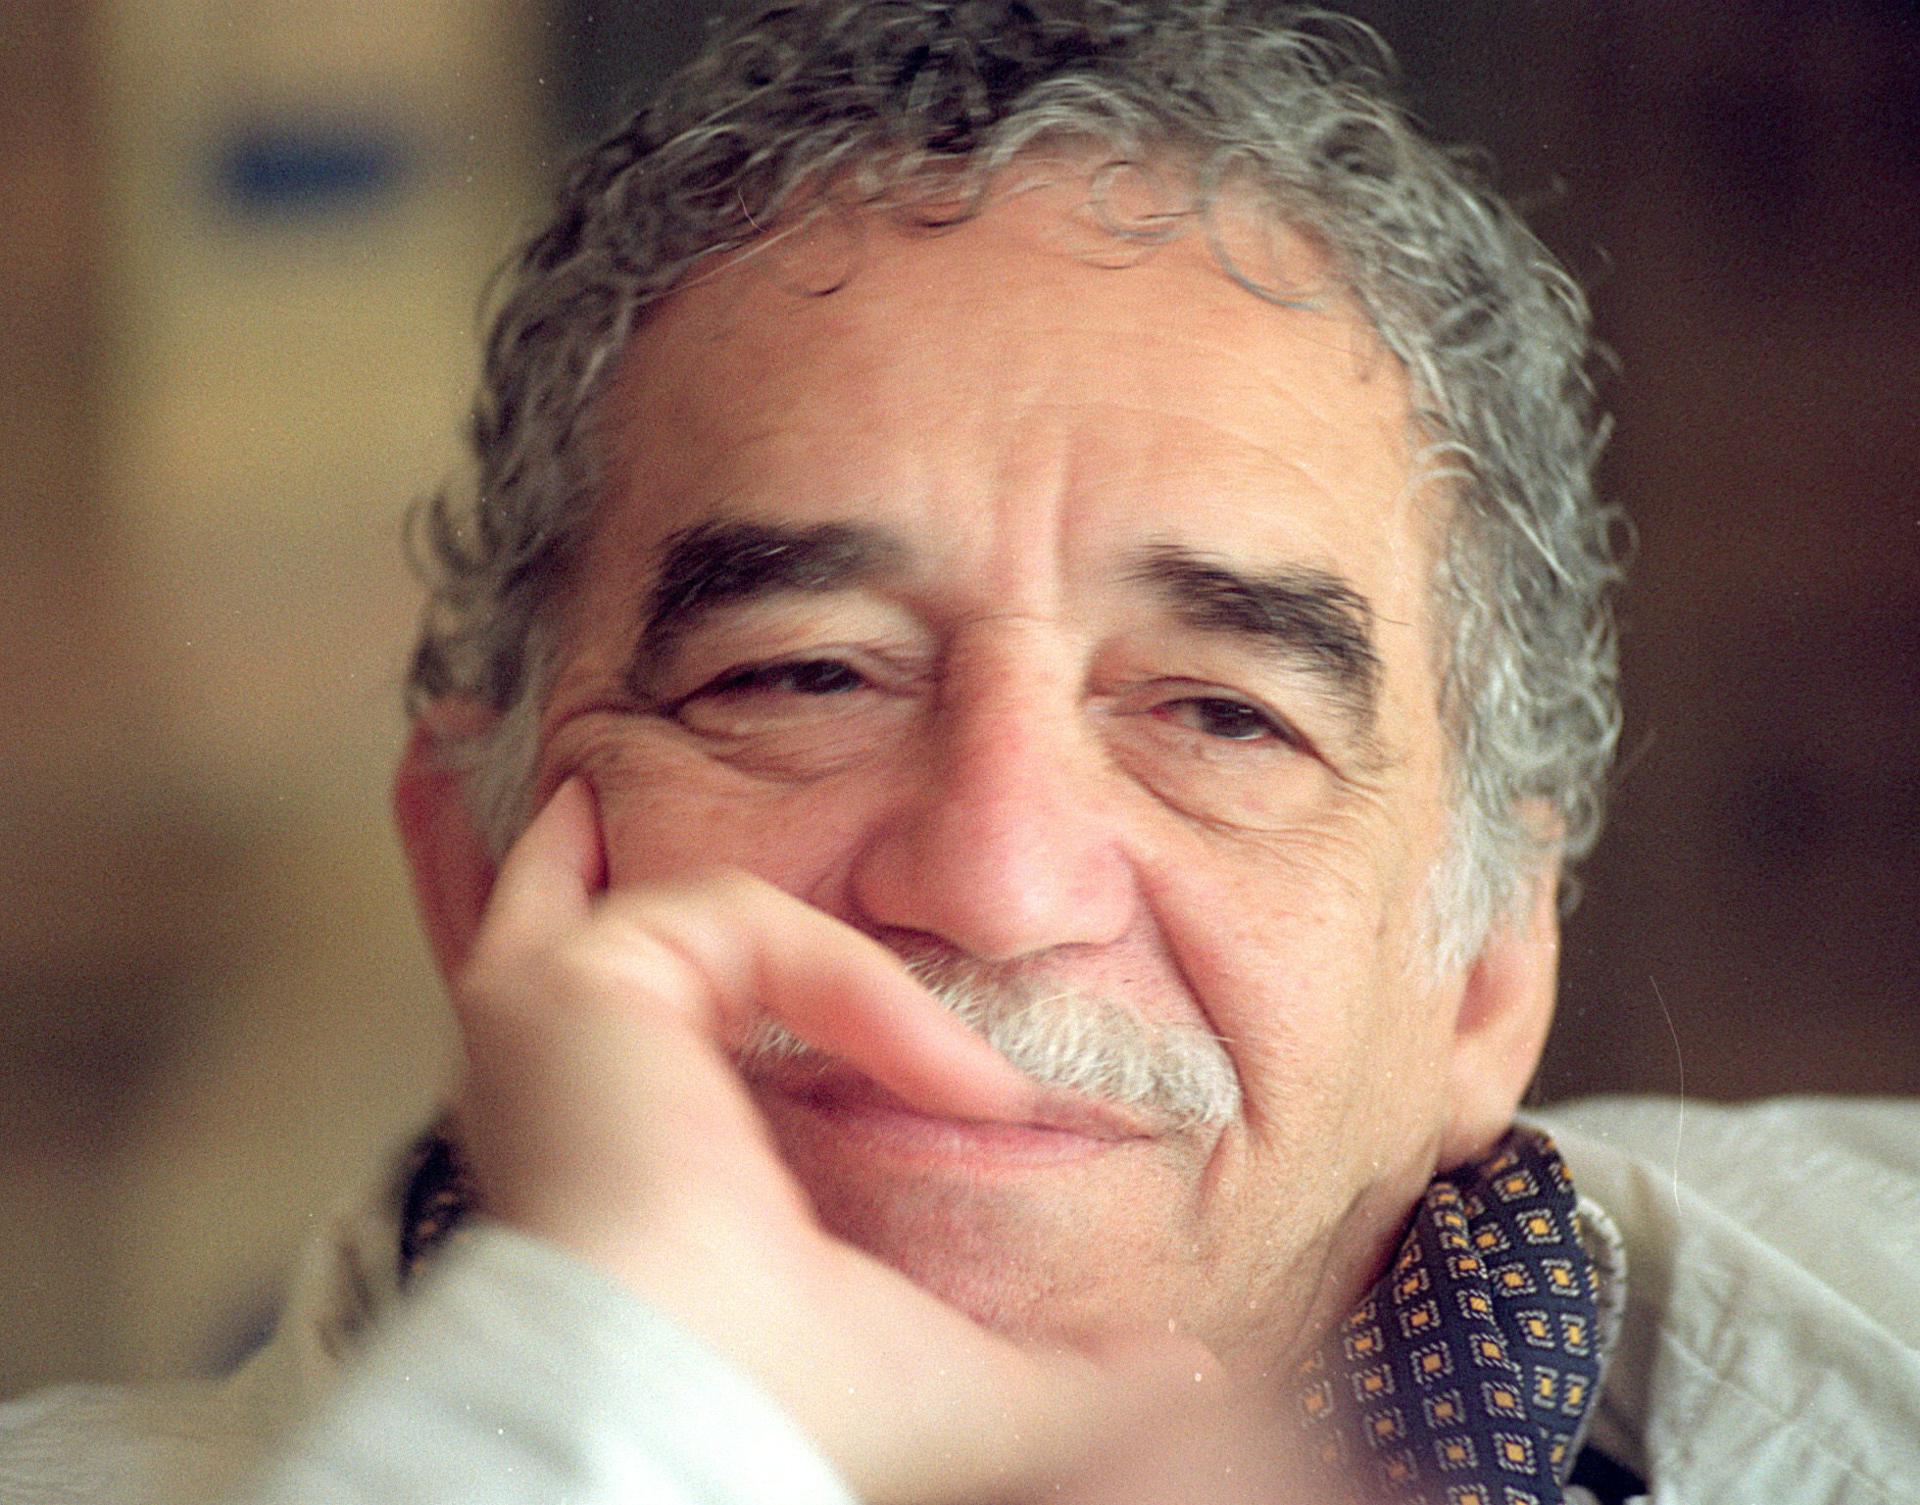 Imagen de archivo de García Márquez fechada en 1994. EFE/Eduardo Abad.